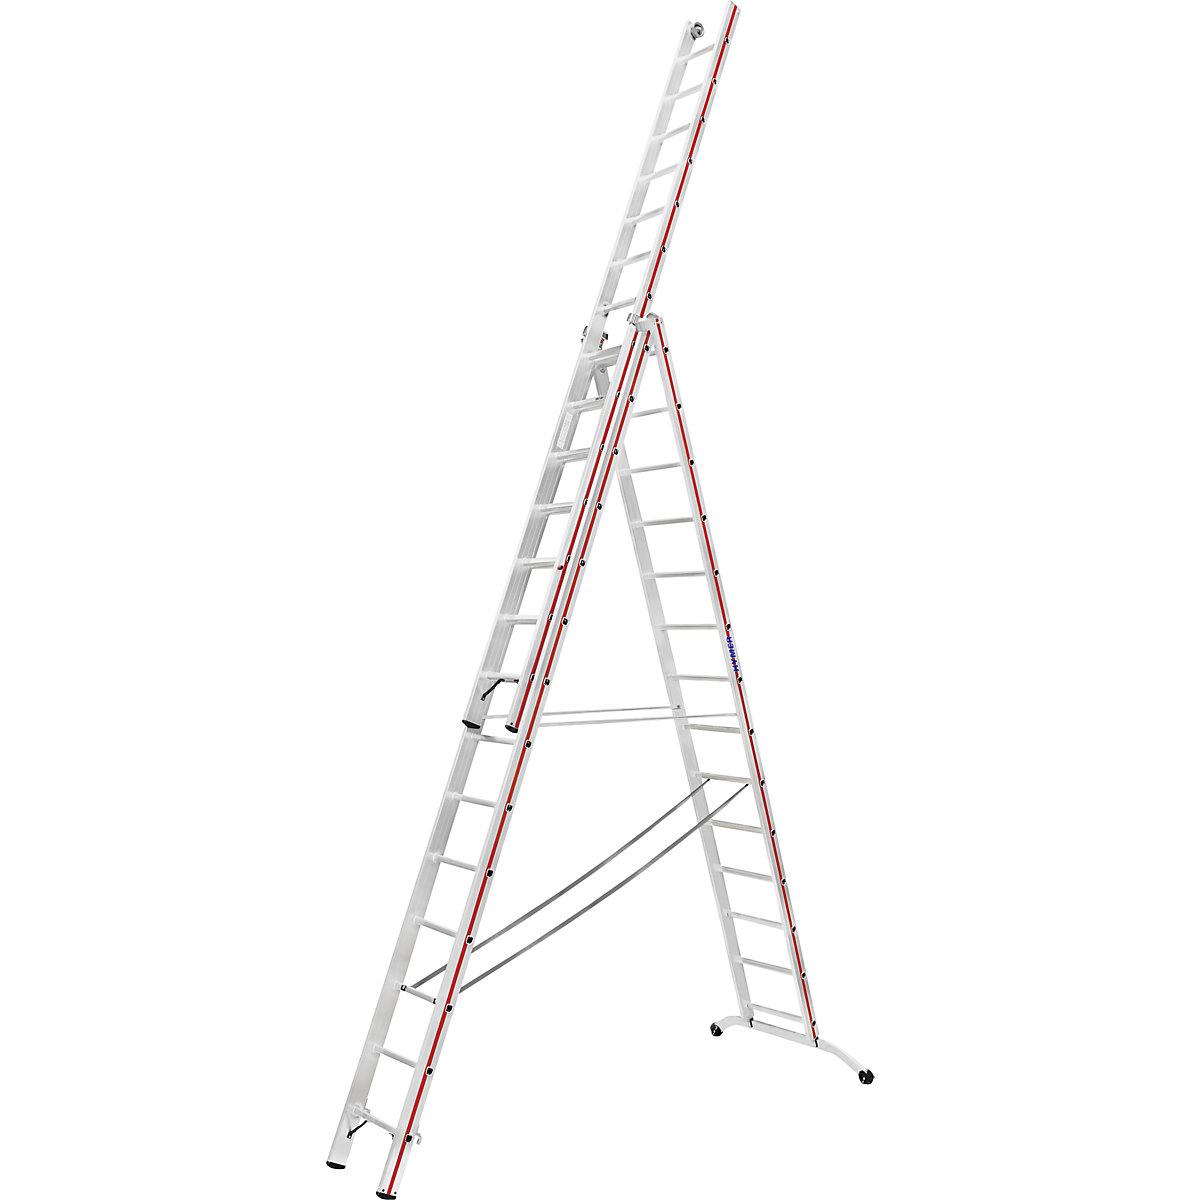 Aluminijasta večnamenska lestev – HYMER, industrijska izvedba z nadglavnimi kolesci, 3 x 14 klinov, maks. delovna višina 10,42 m